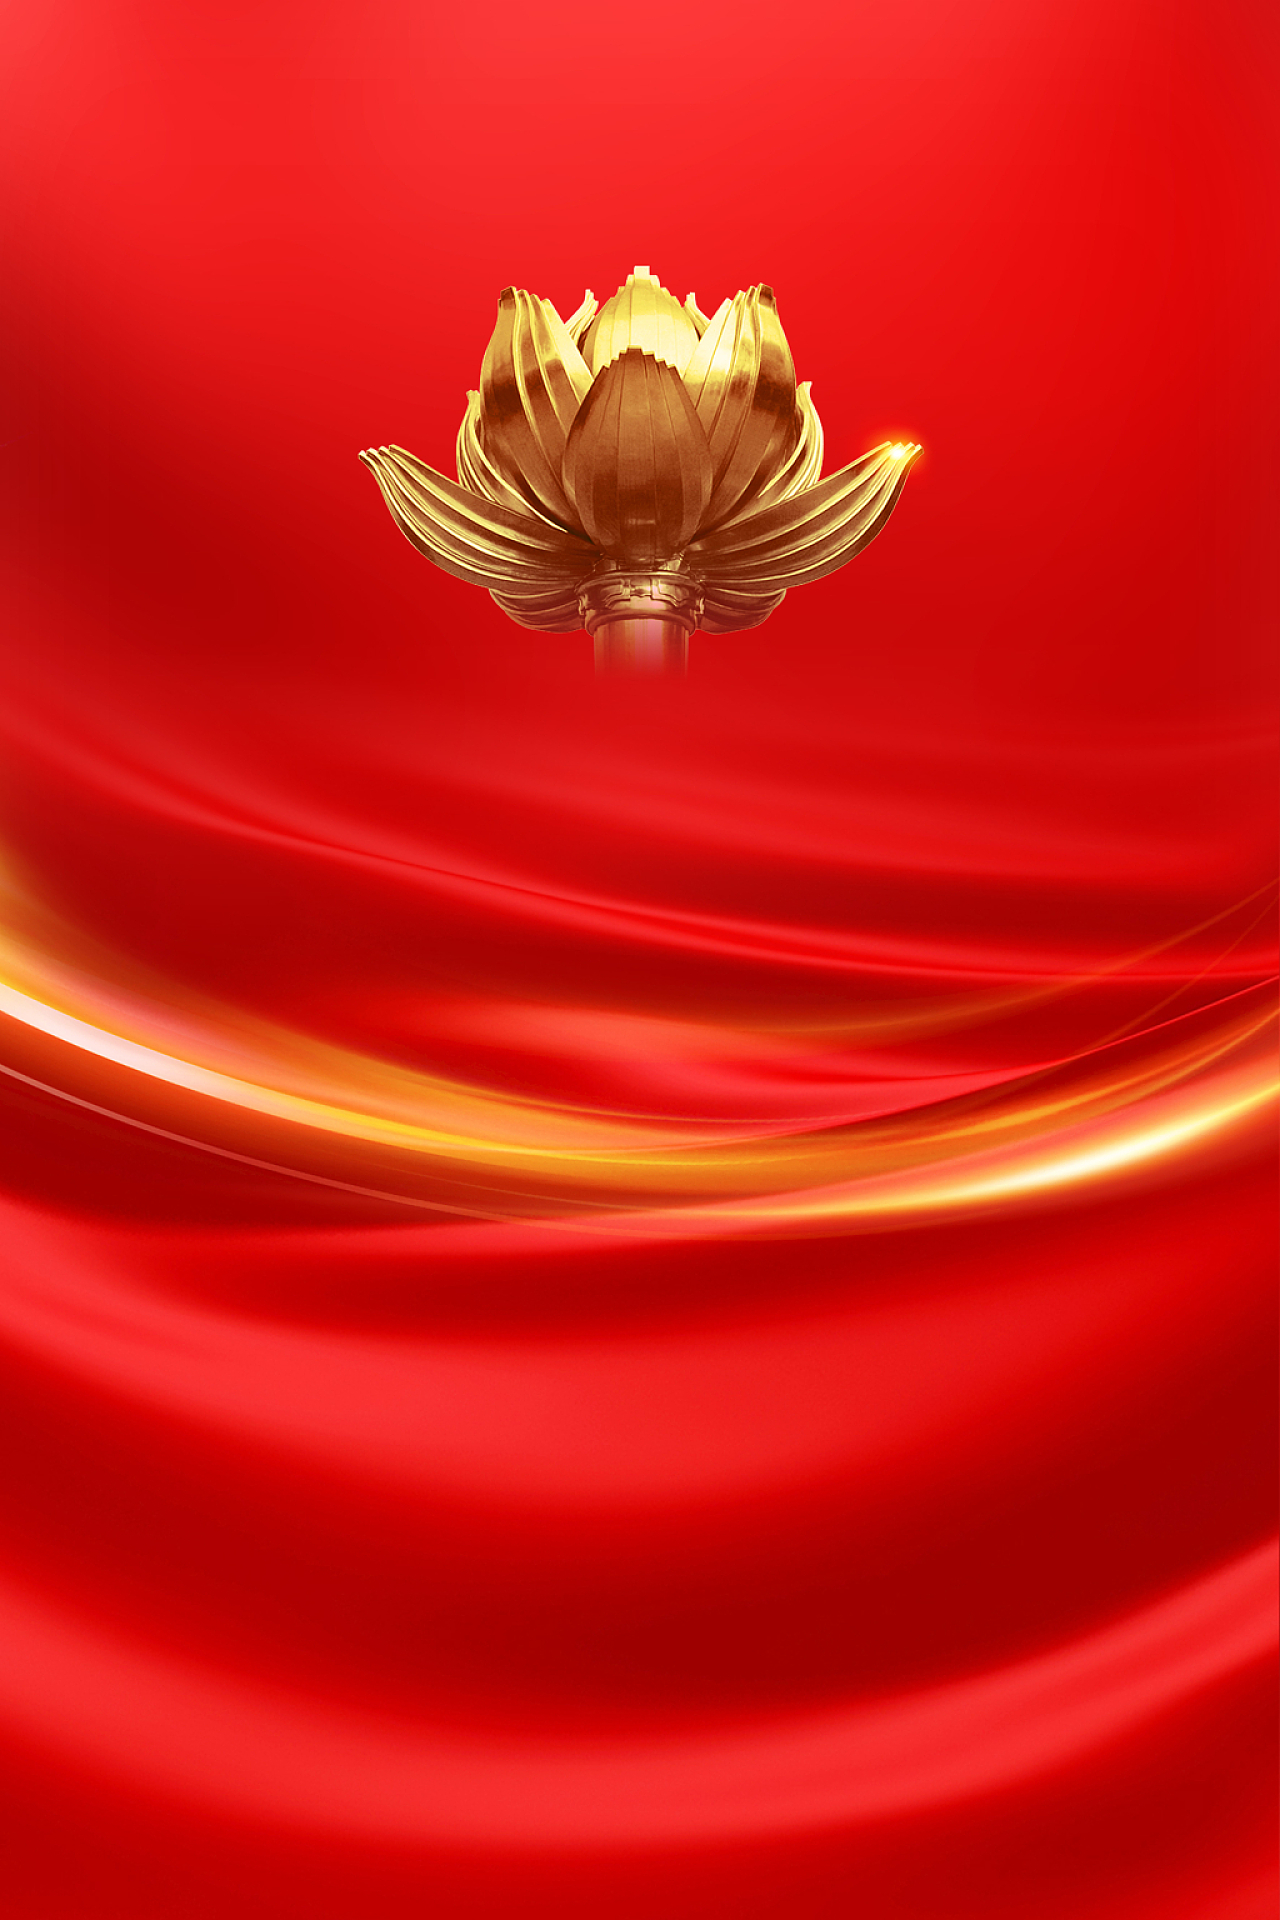 红色丝绸质感莲花庆祝澳门回归22周年纪念日海报背景